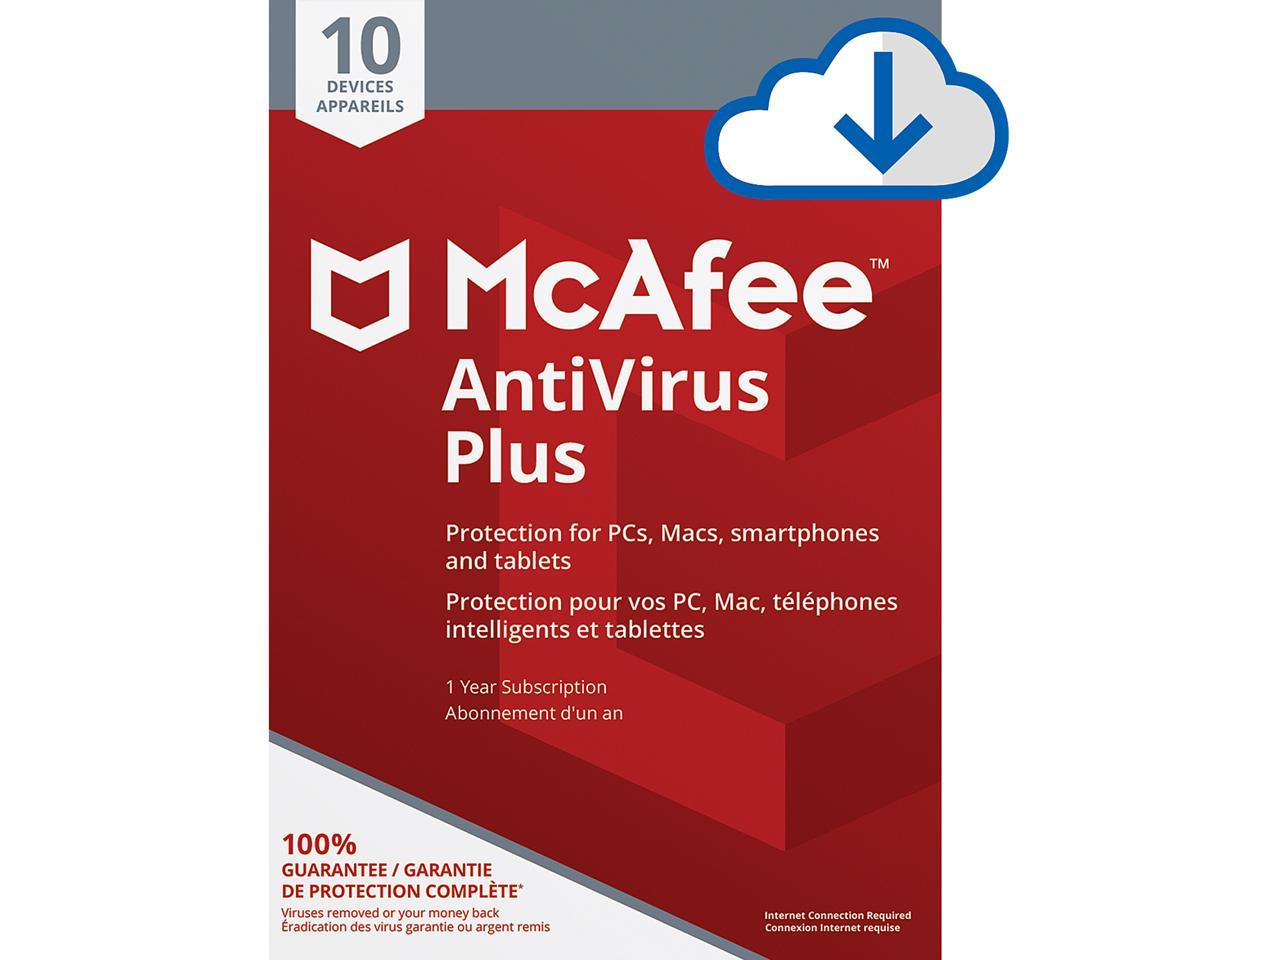 mcafee antivirus free download